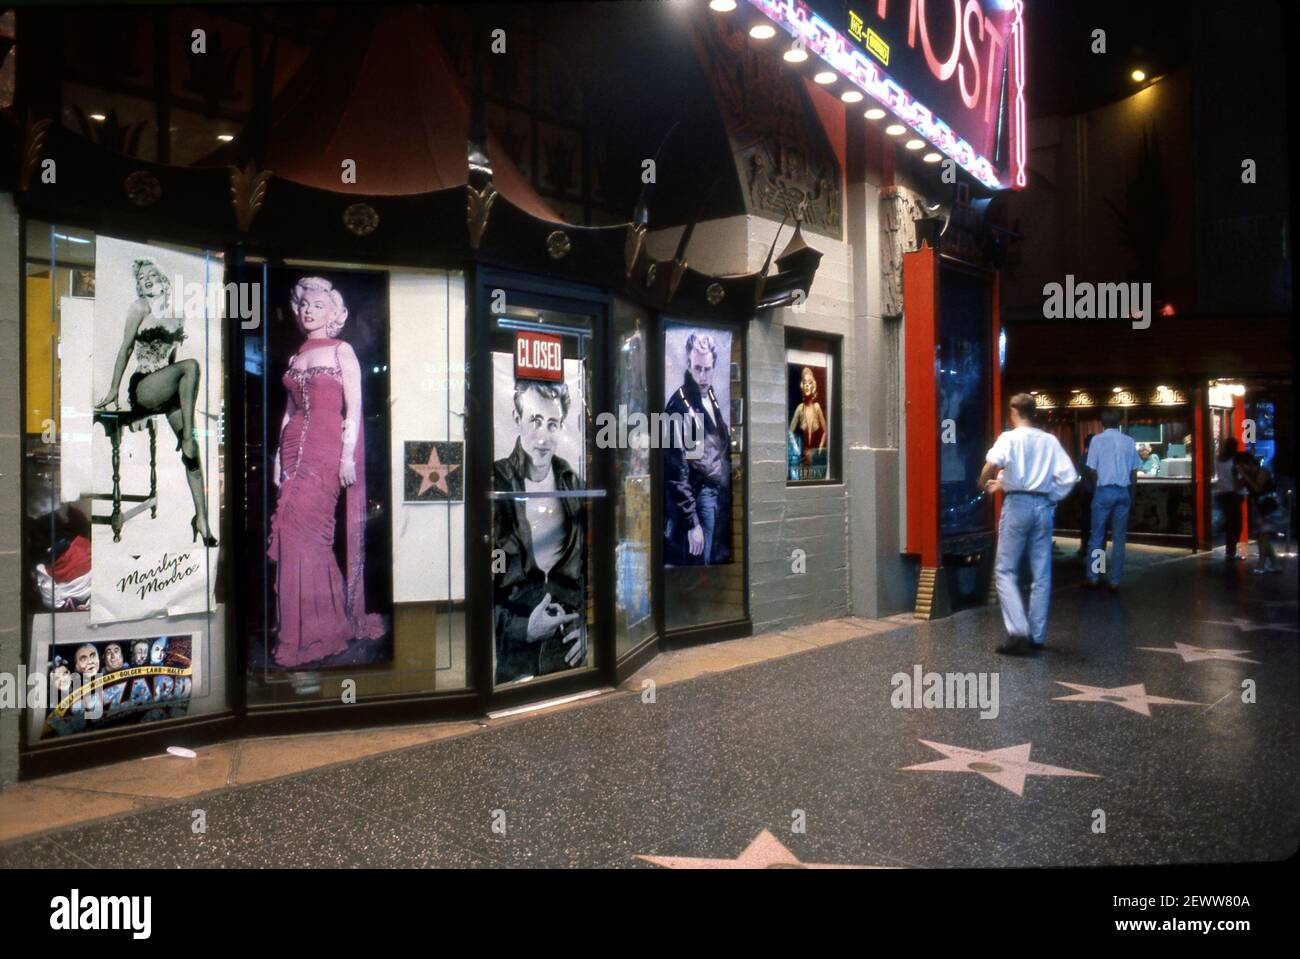 Boutique de souvenirs avec affiches de Marilyn Monroe et James Dean au Chinese Theatre sur Hollywood Blvd. La nuit. Banque D'Images